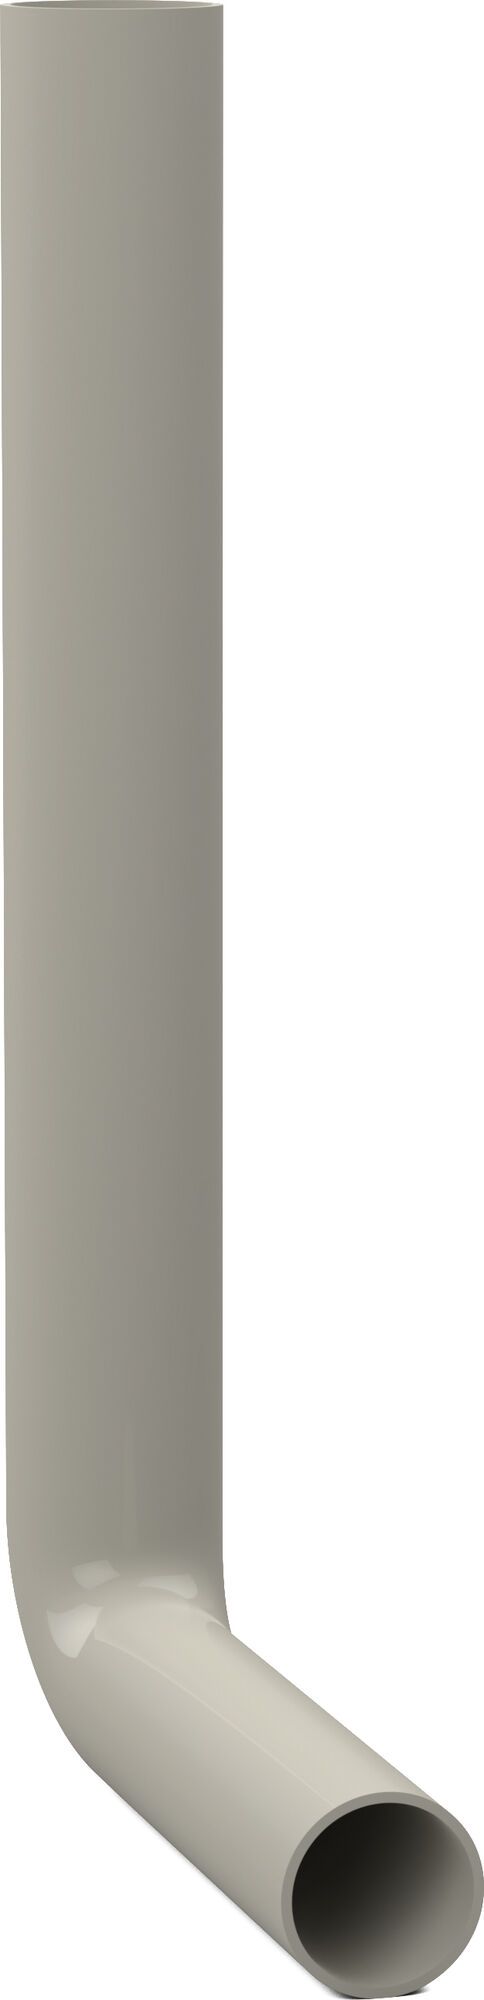 Flush pipe elbow 380 x 210 mm, pergamon